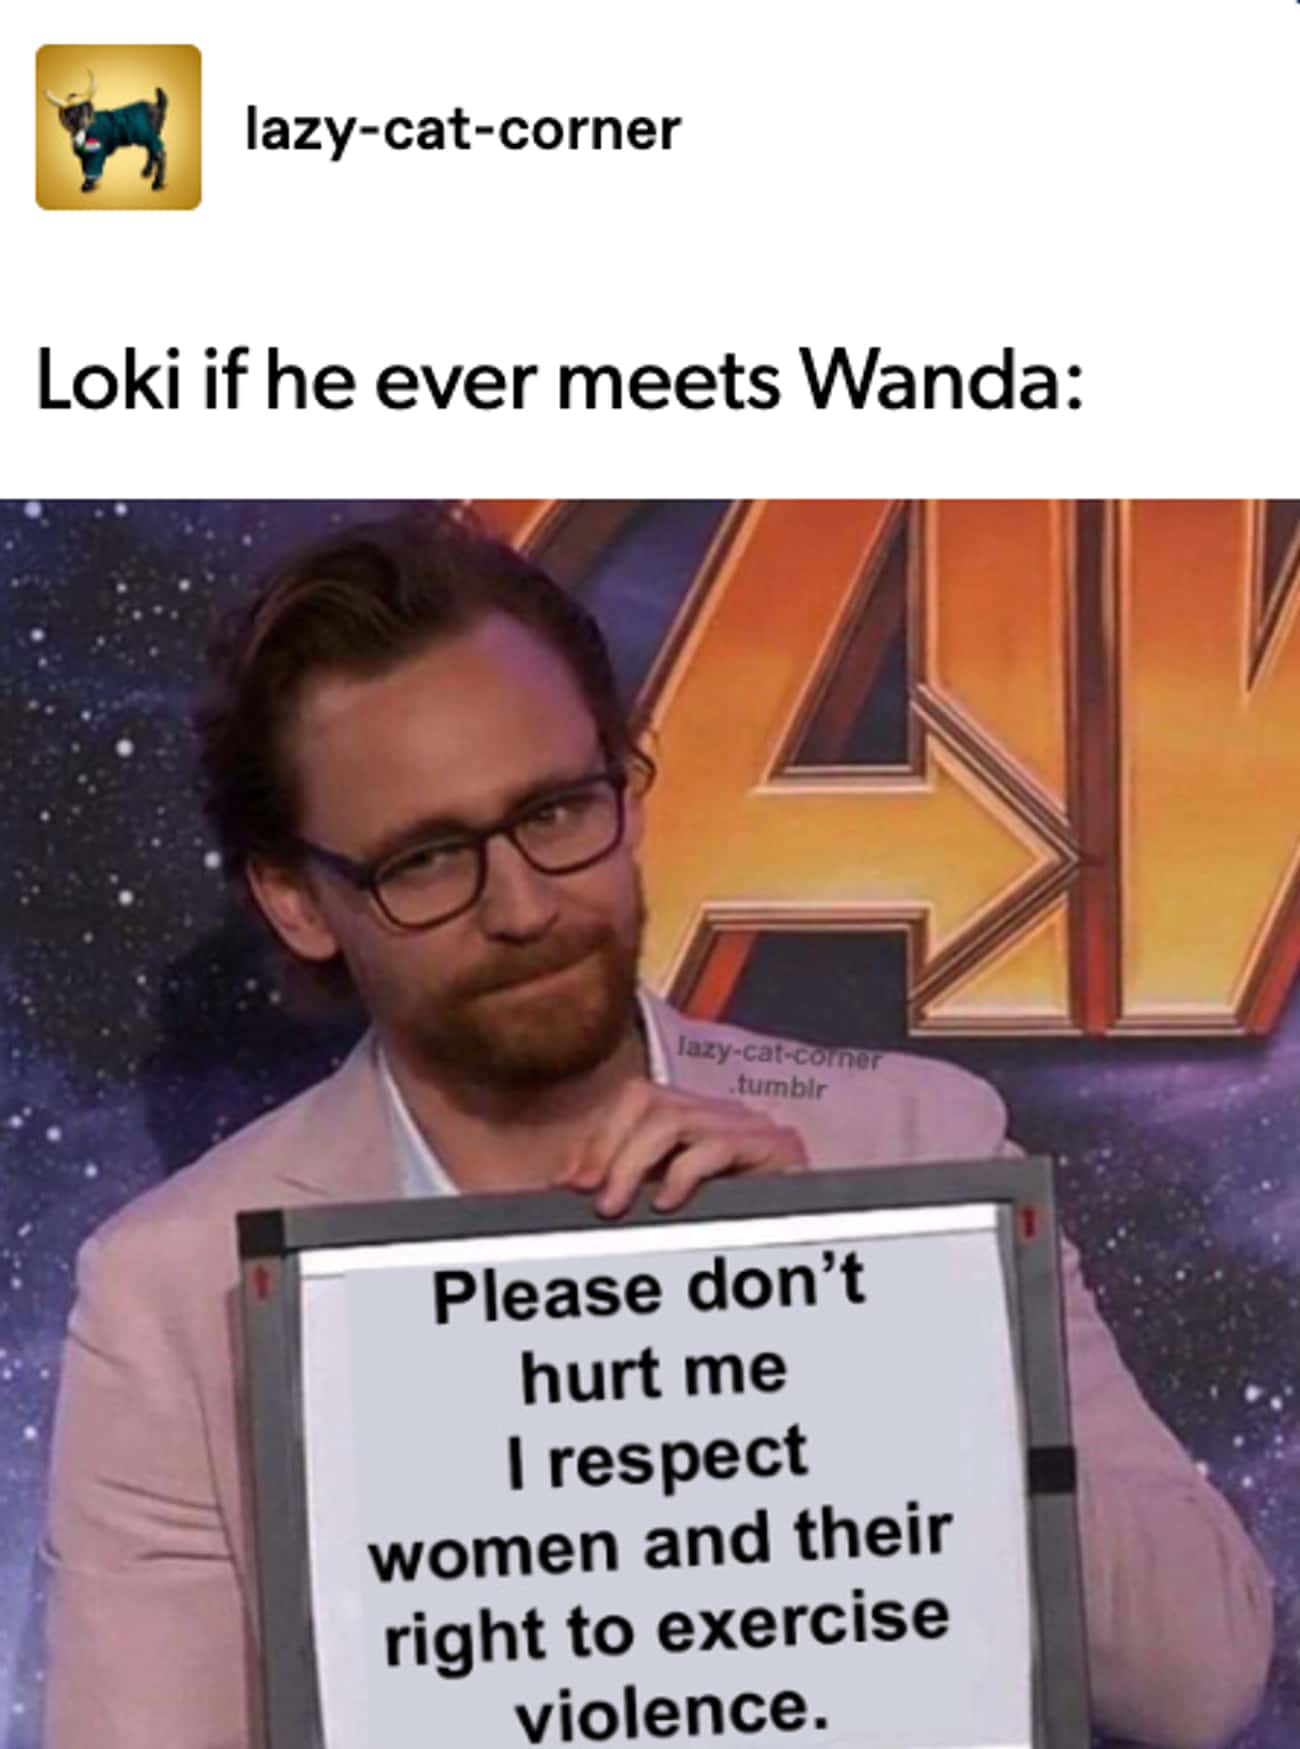 When Loki Met Wanda...